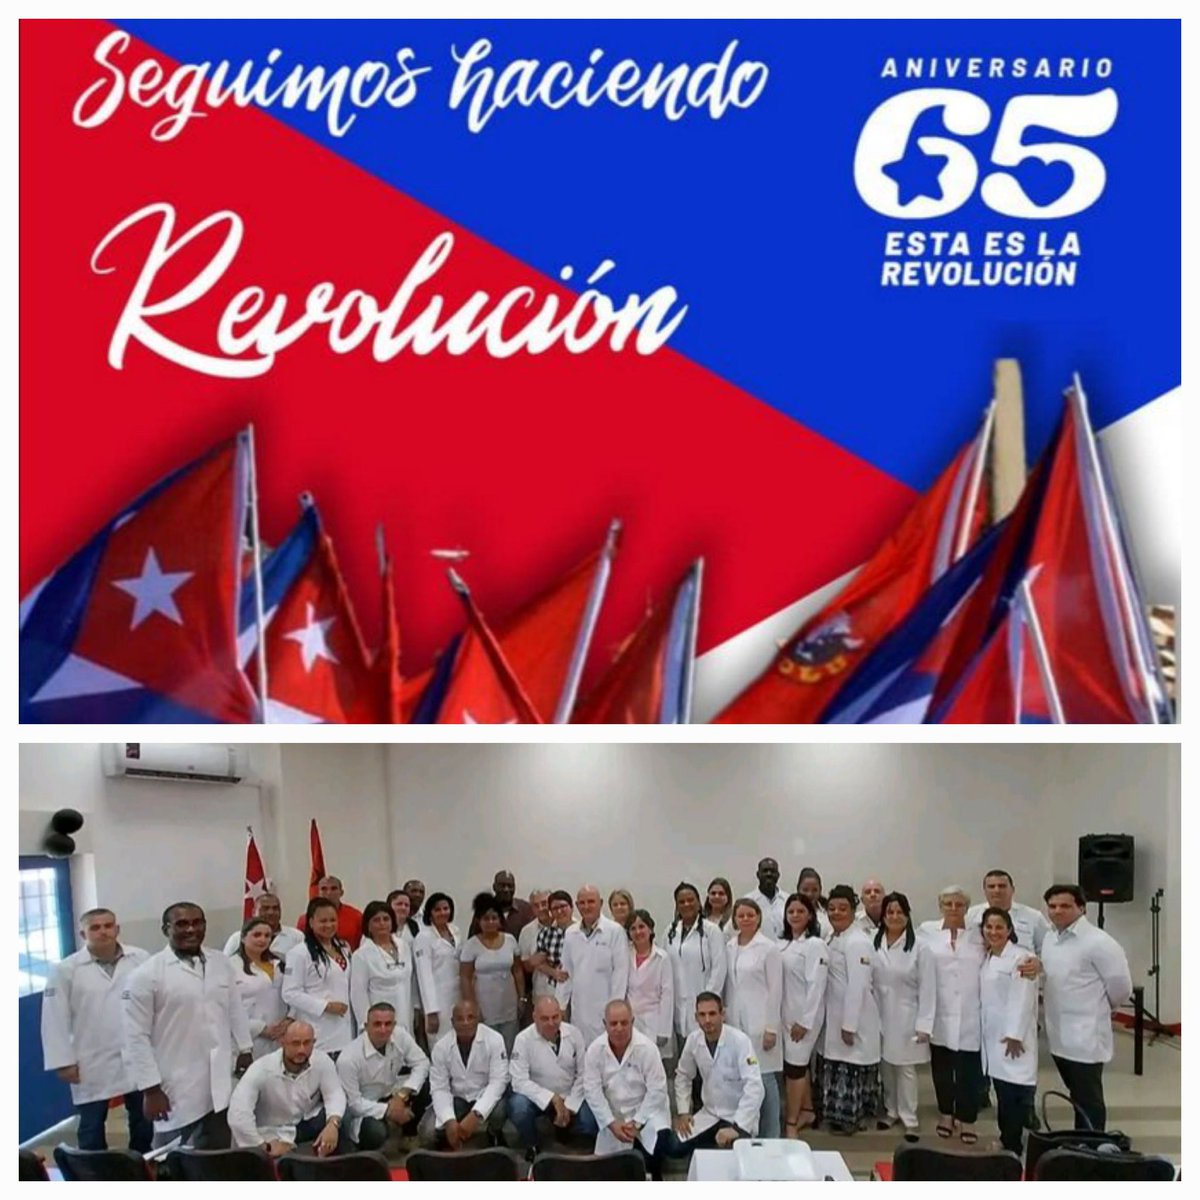 Orgulloso de tener mi otra familia en esta #BMCGu8neaBissau. Seguimos haciendo historia por nuestro 65 Aniversario. Gracias mi Cuba bella. #BMCGuineaBissau #CubaCoopera